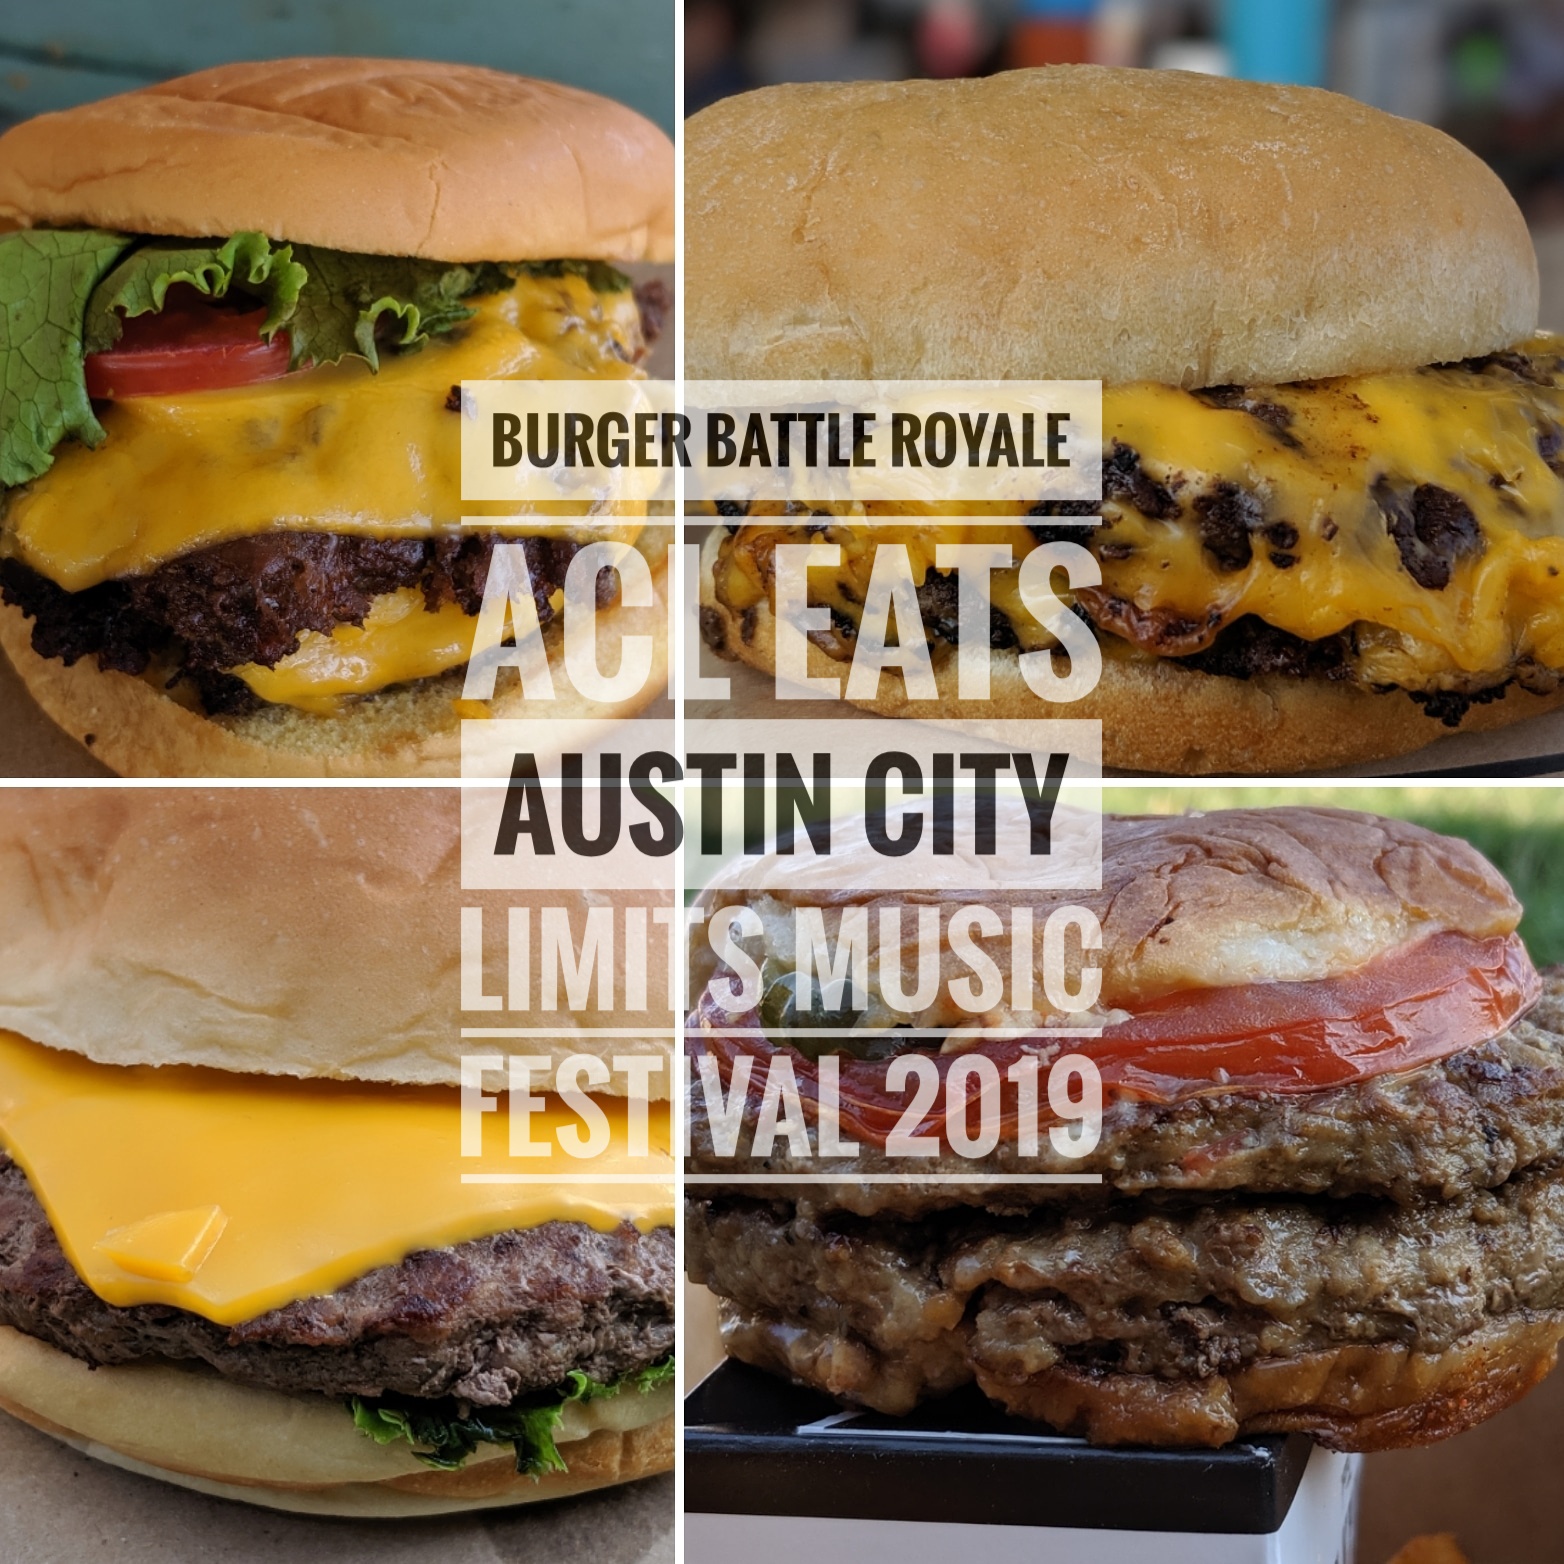 ACL Eats Burger Battle Royale at the Austin City Limits Music Festival